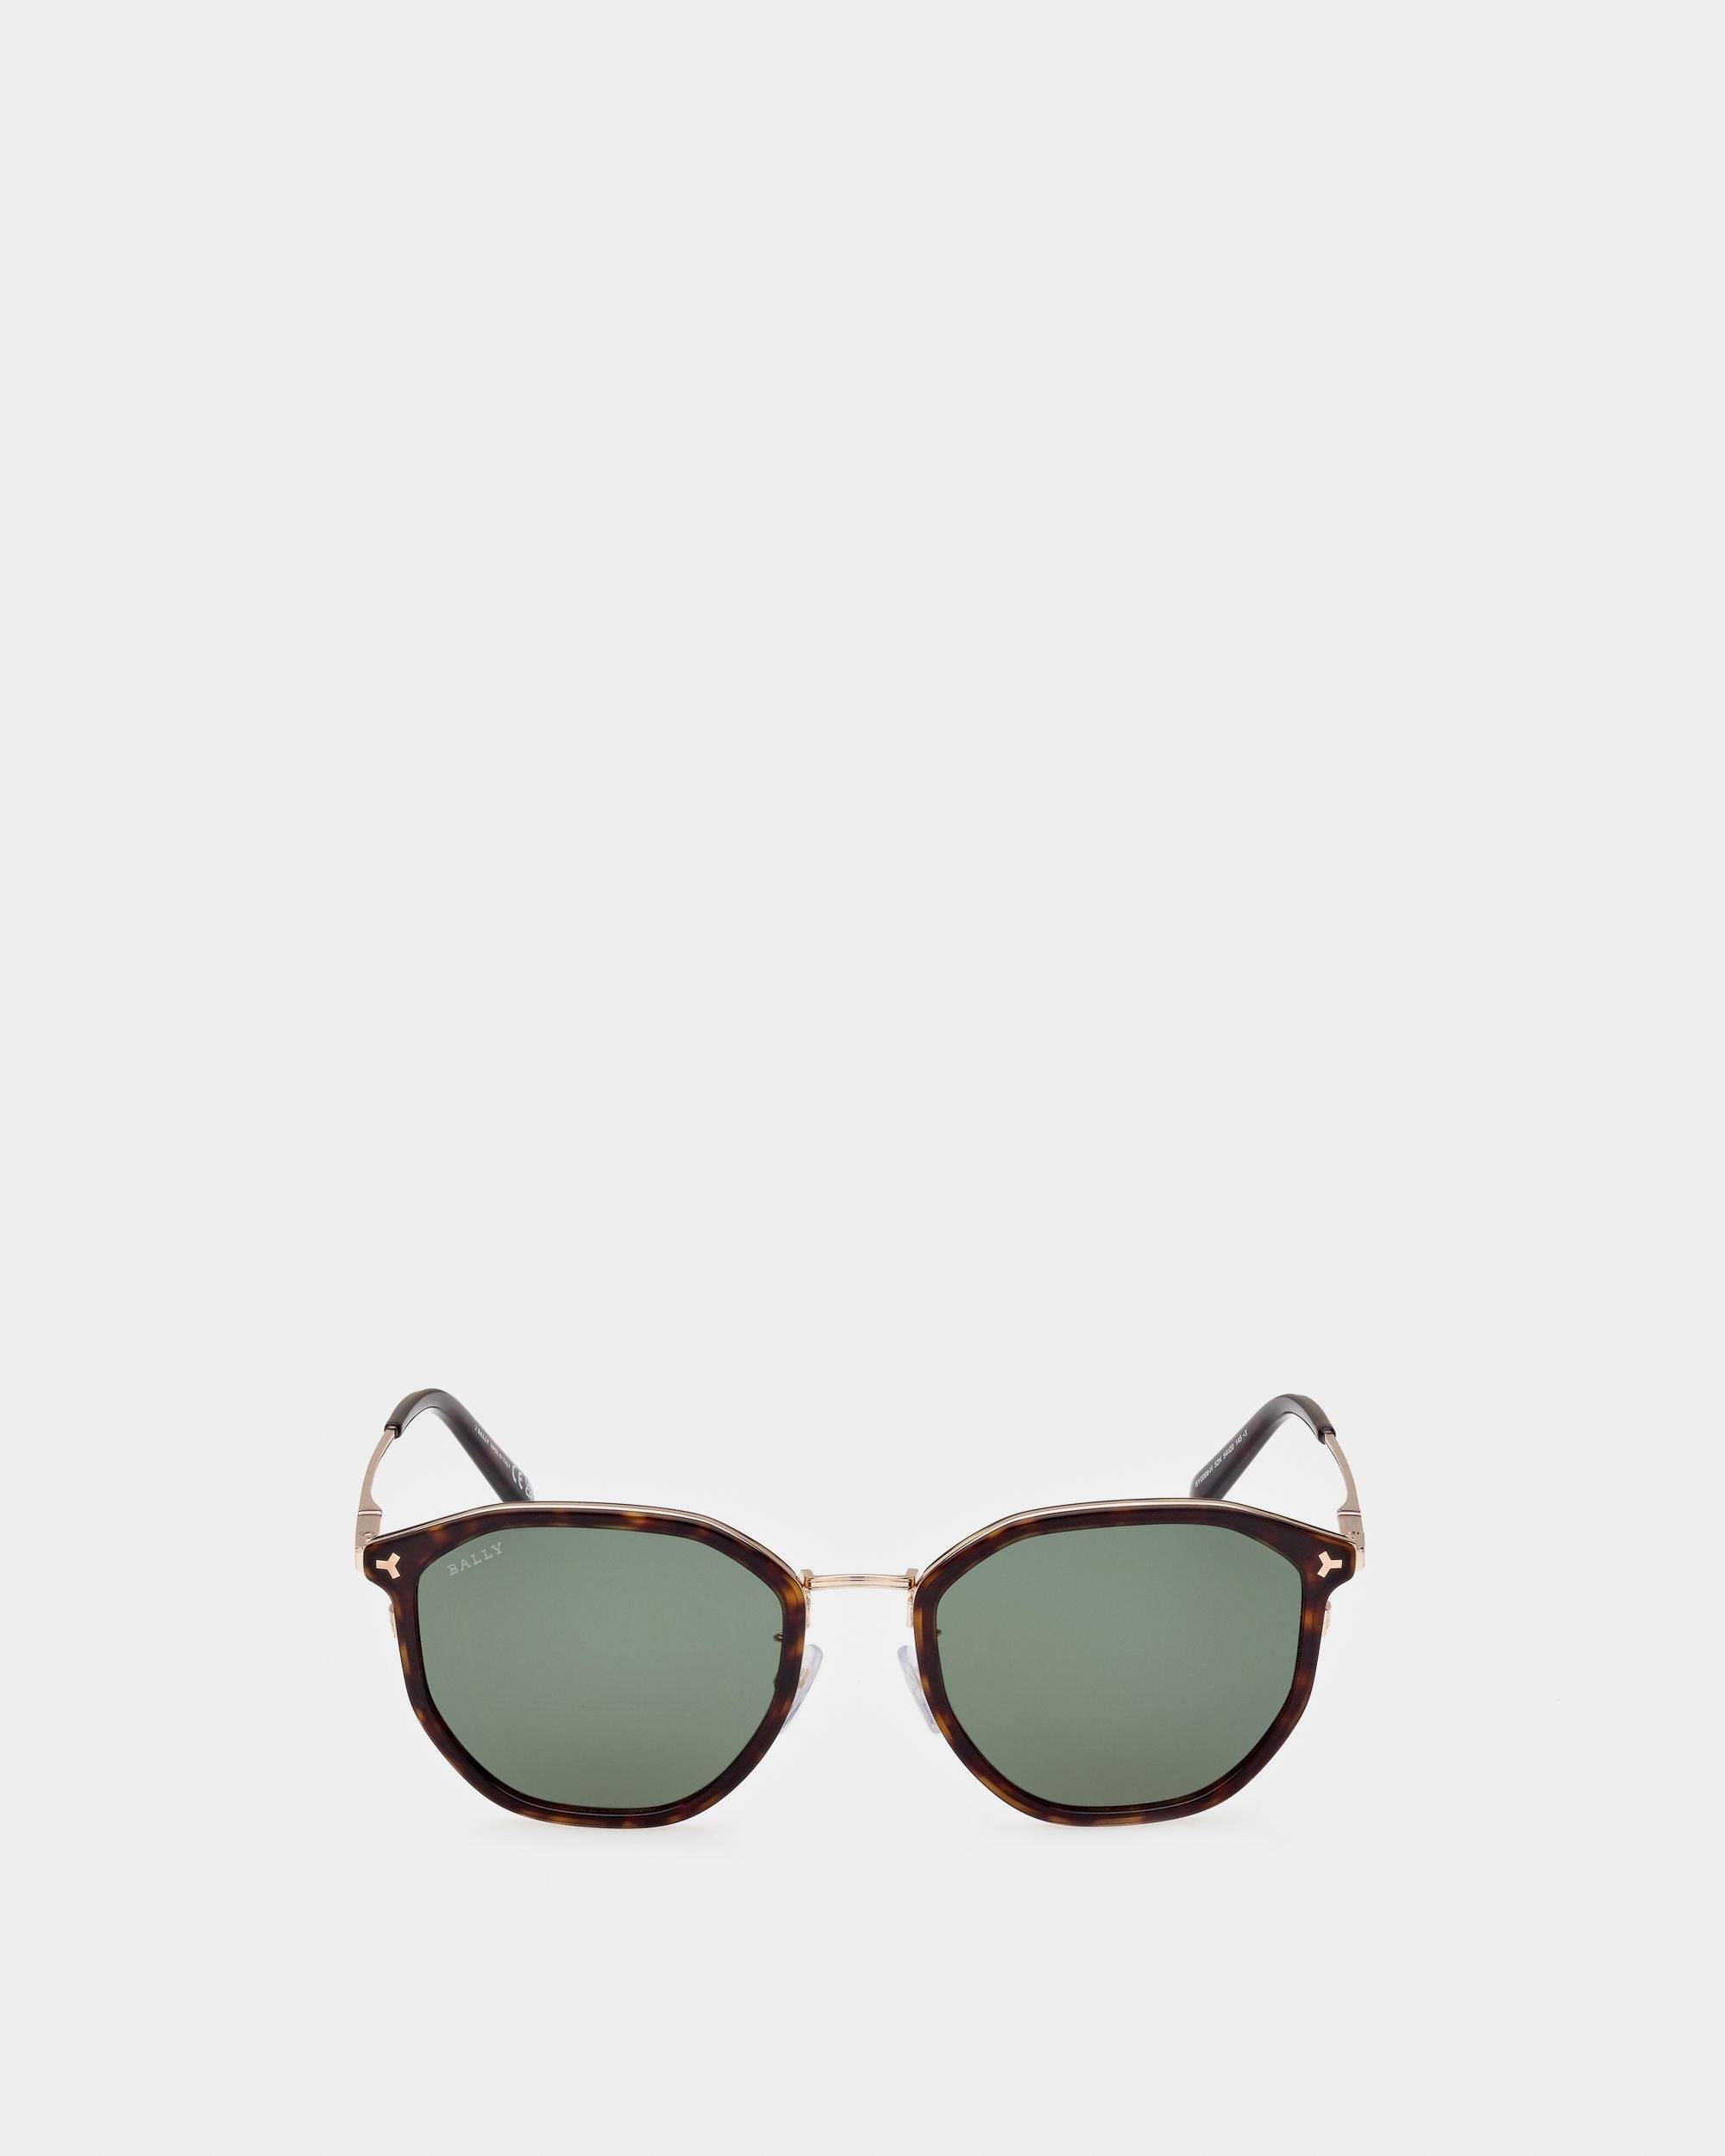 Languard Metal & Acetate Sunglasses In Havana Brown & Green Lenses - Men's - Bally